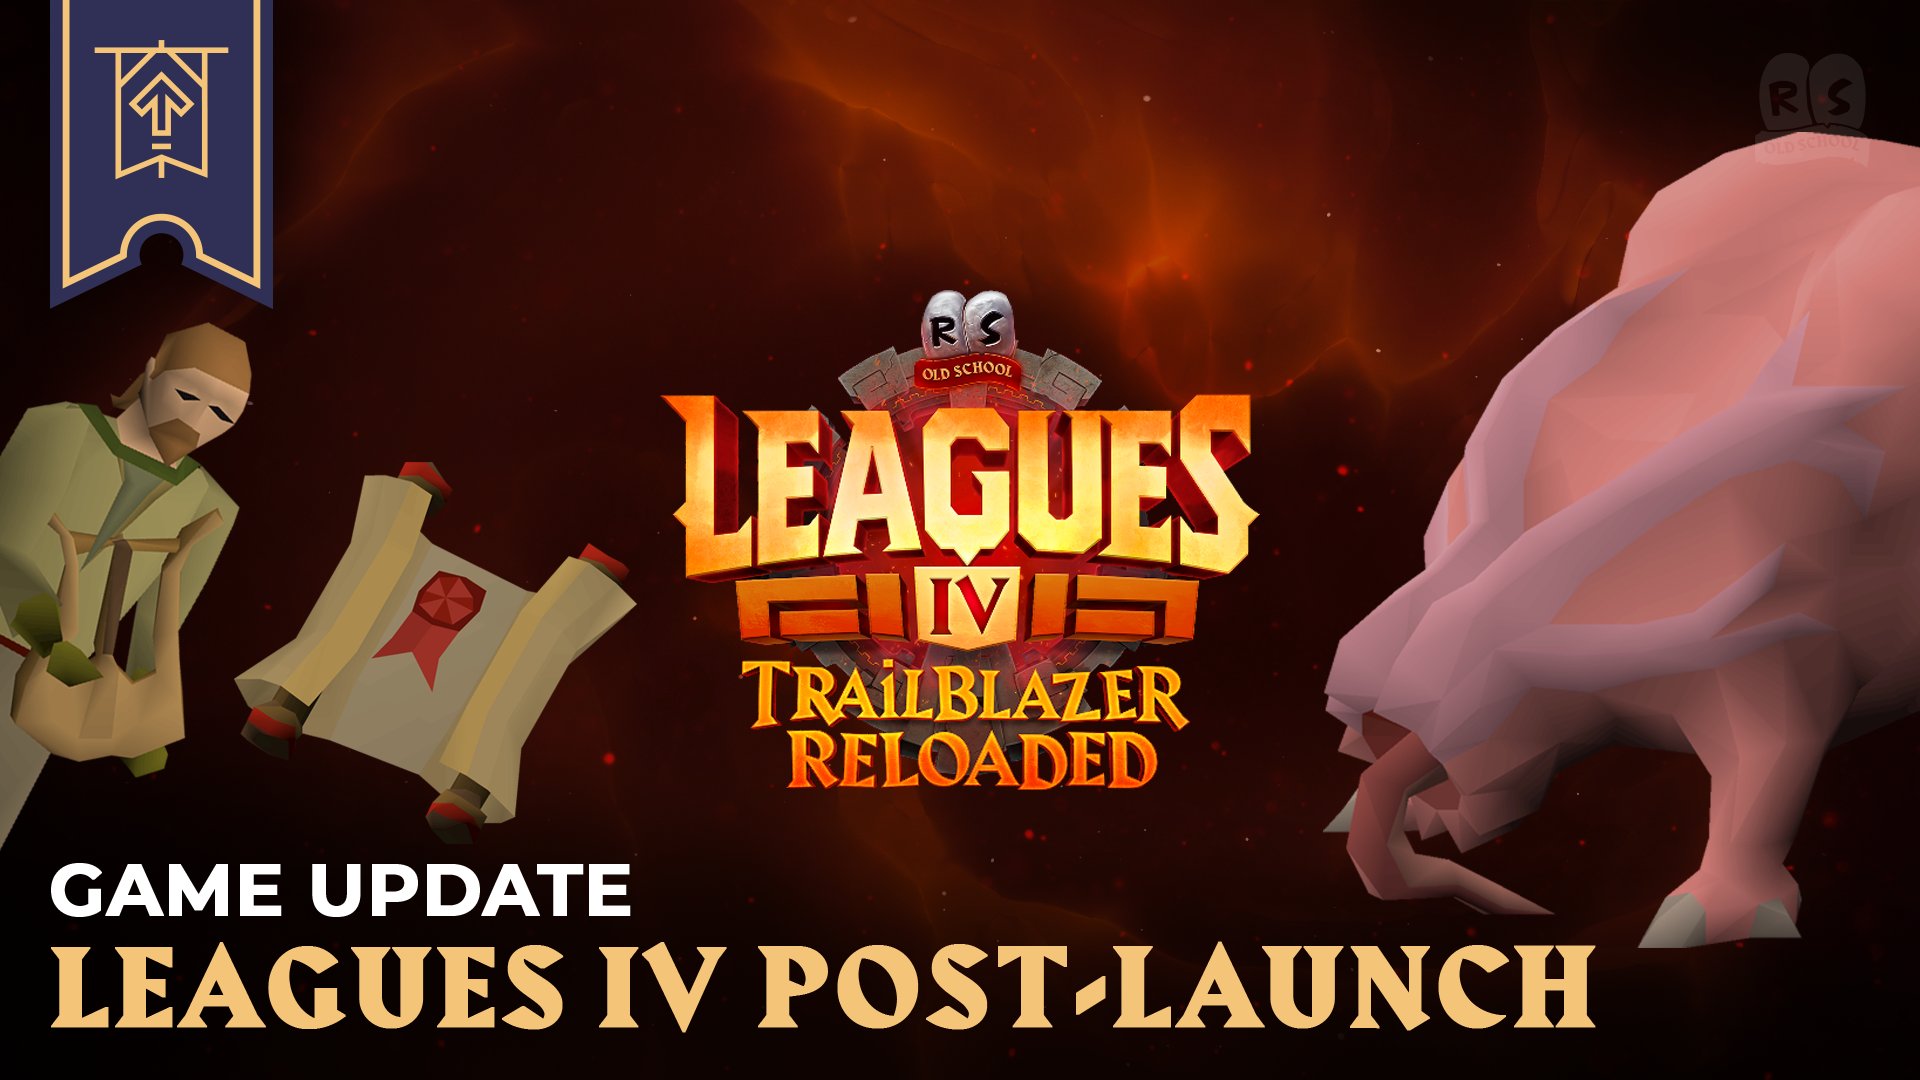 Leagues IV: Trailblazer Reloaded